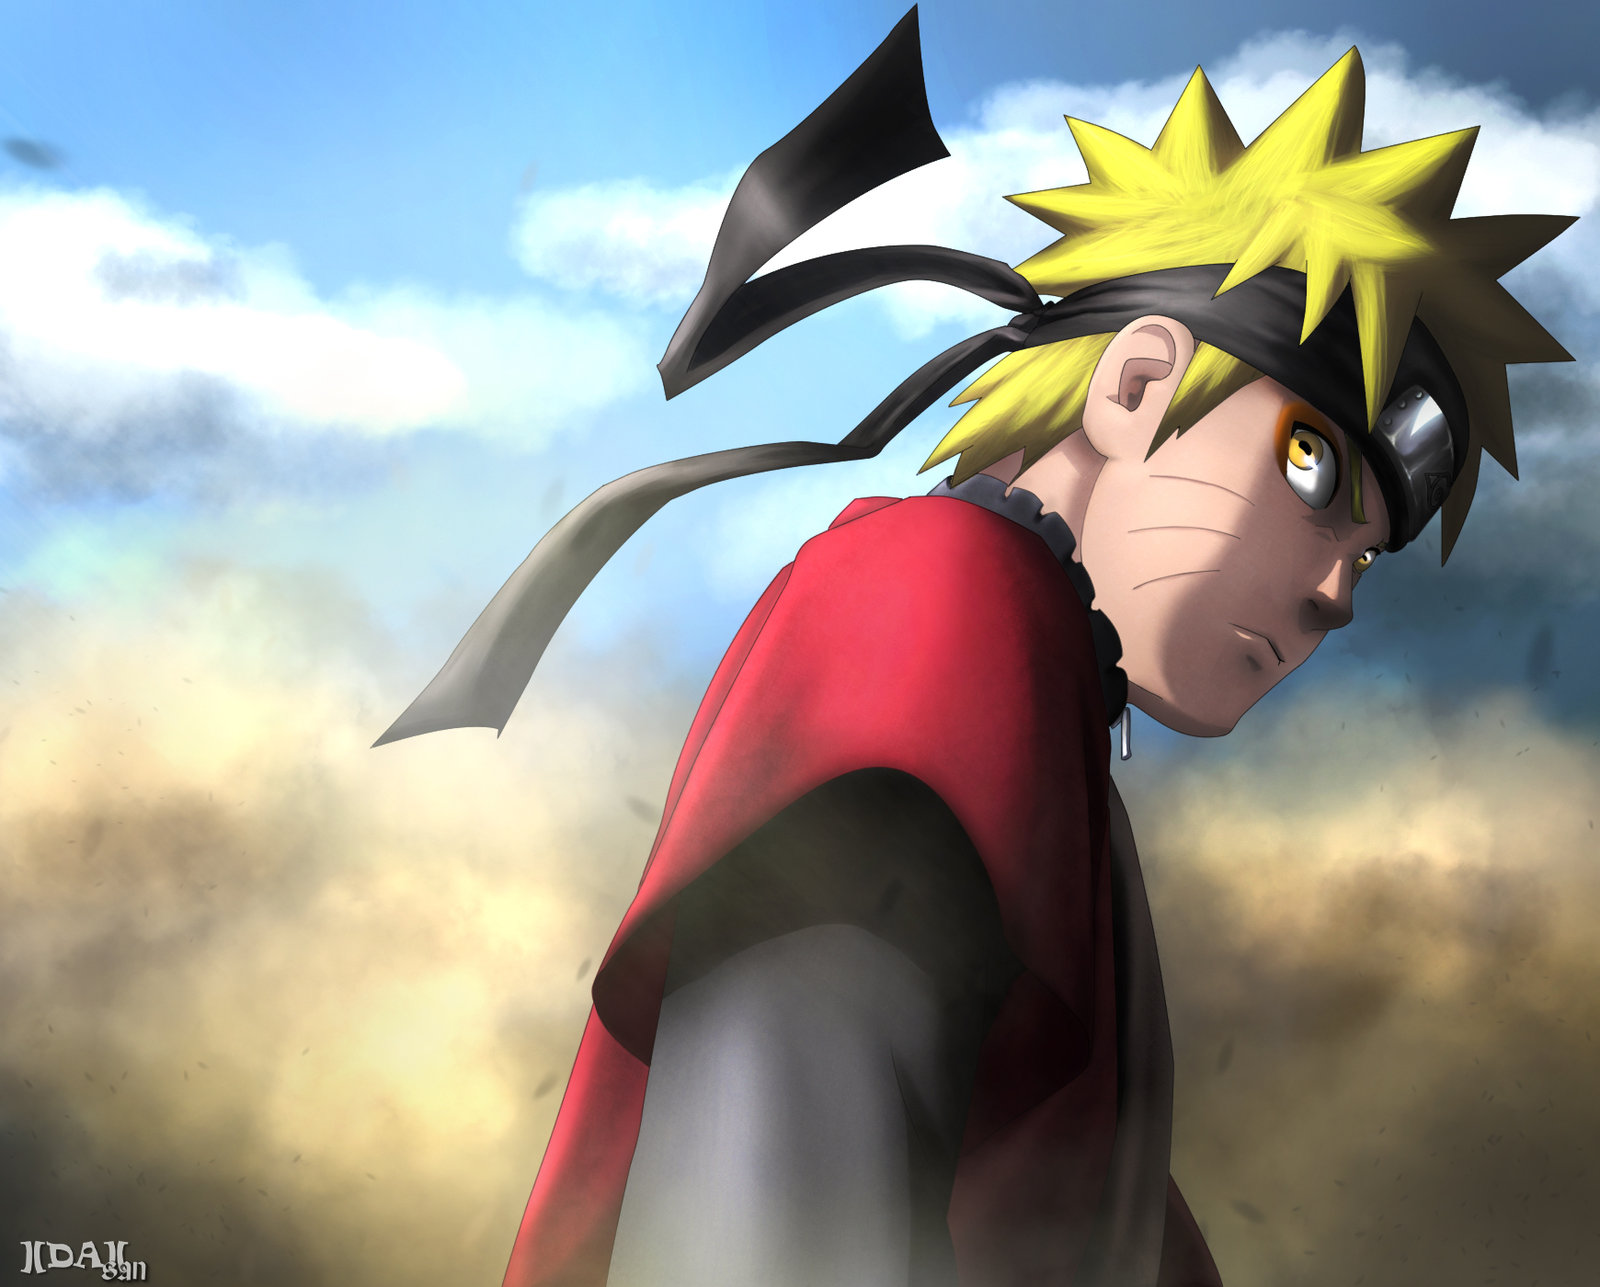 Naruto Sage Mode Training : When did Naruto's sage mode training start? - Quora : When does naruto become sage mode?